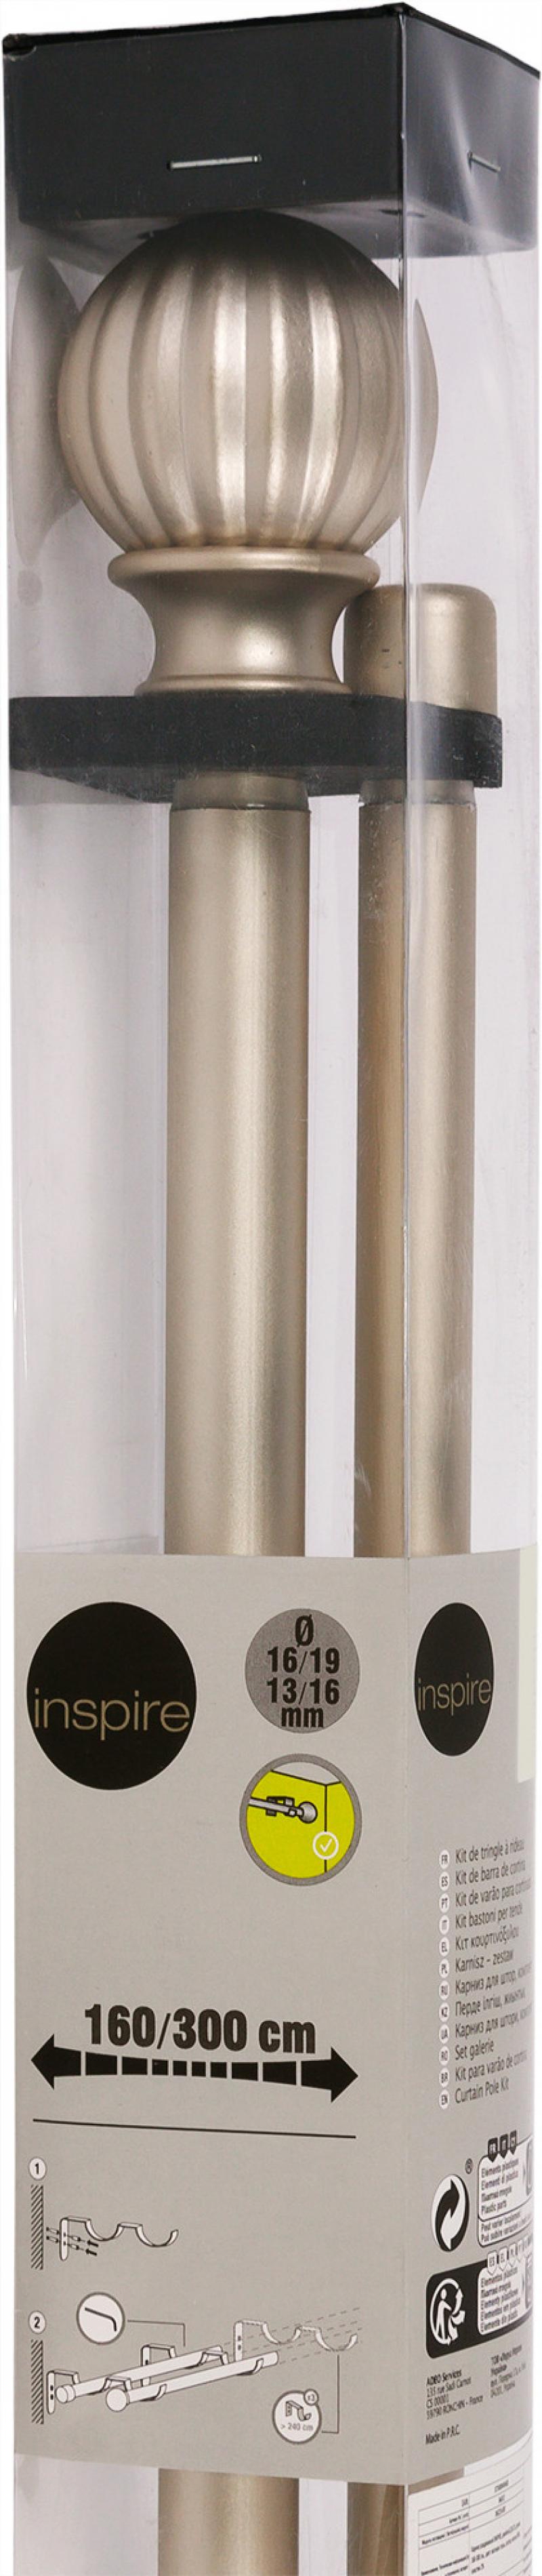 Карниз двухрядный раздвижной Inspire «Шар», 160-300 см, цвет матовая сталь